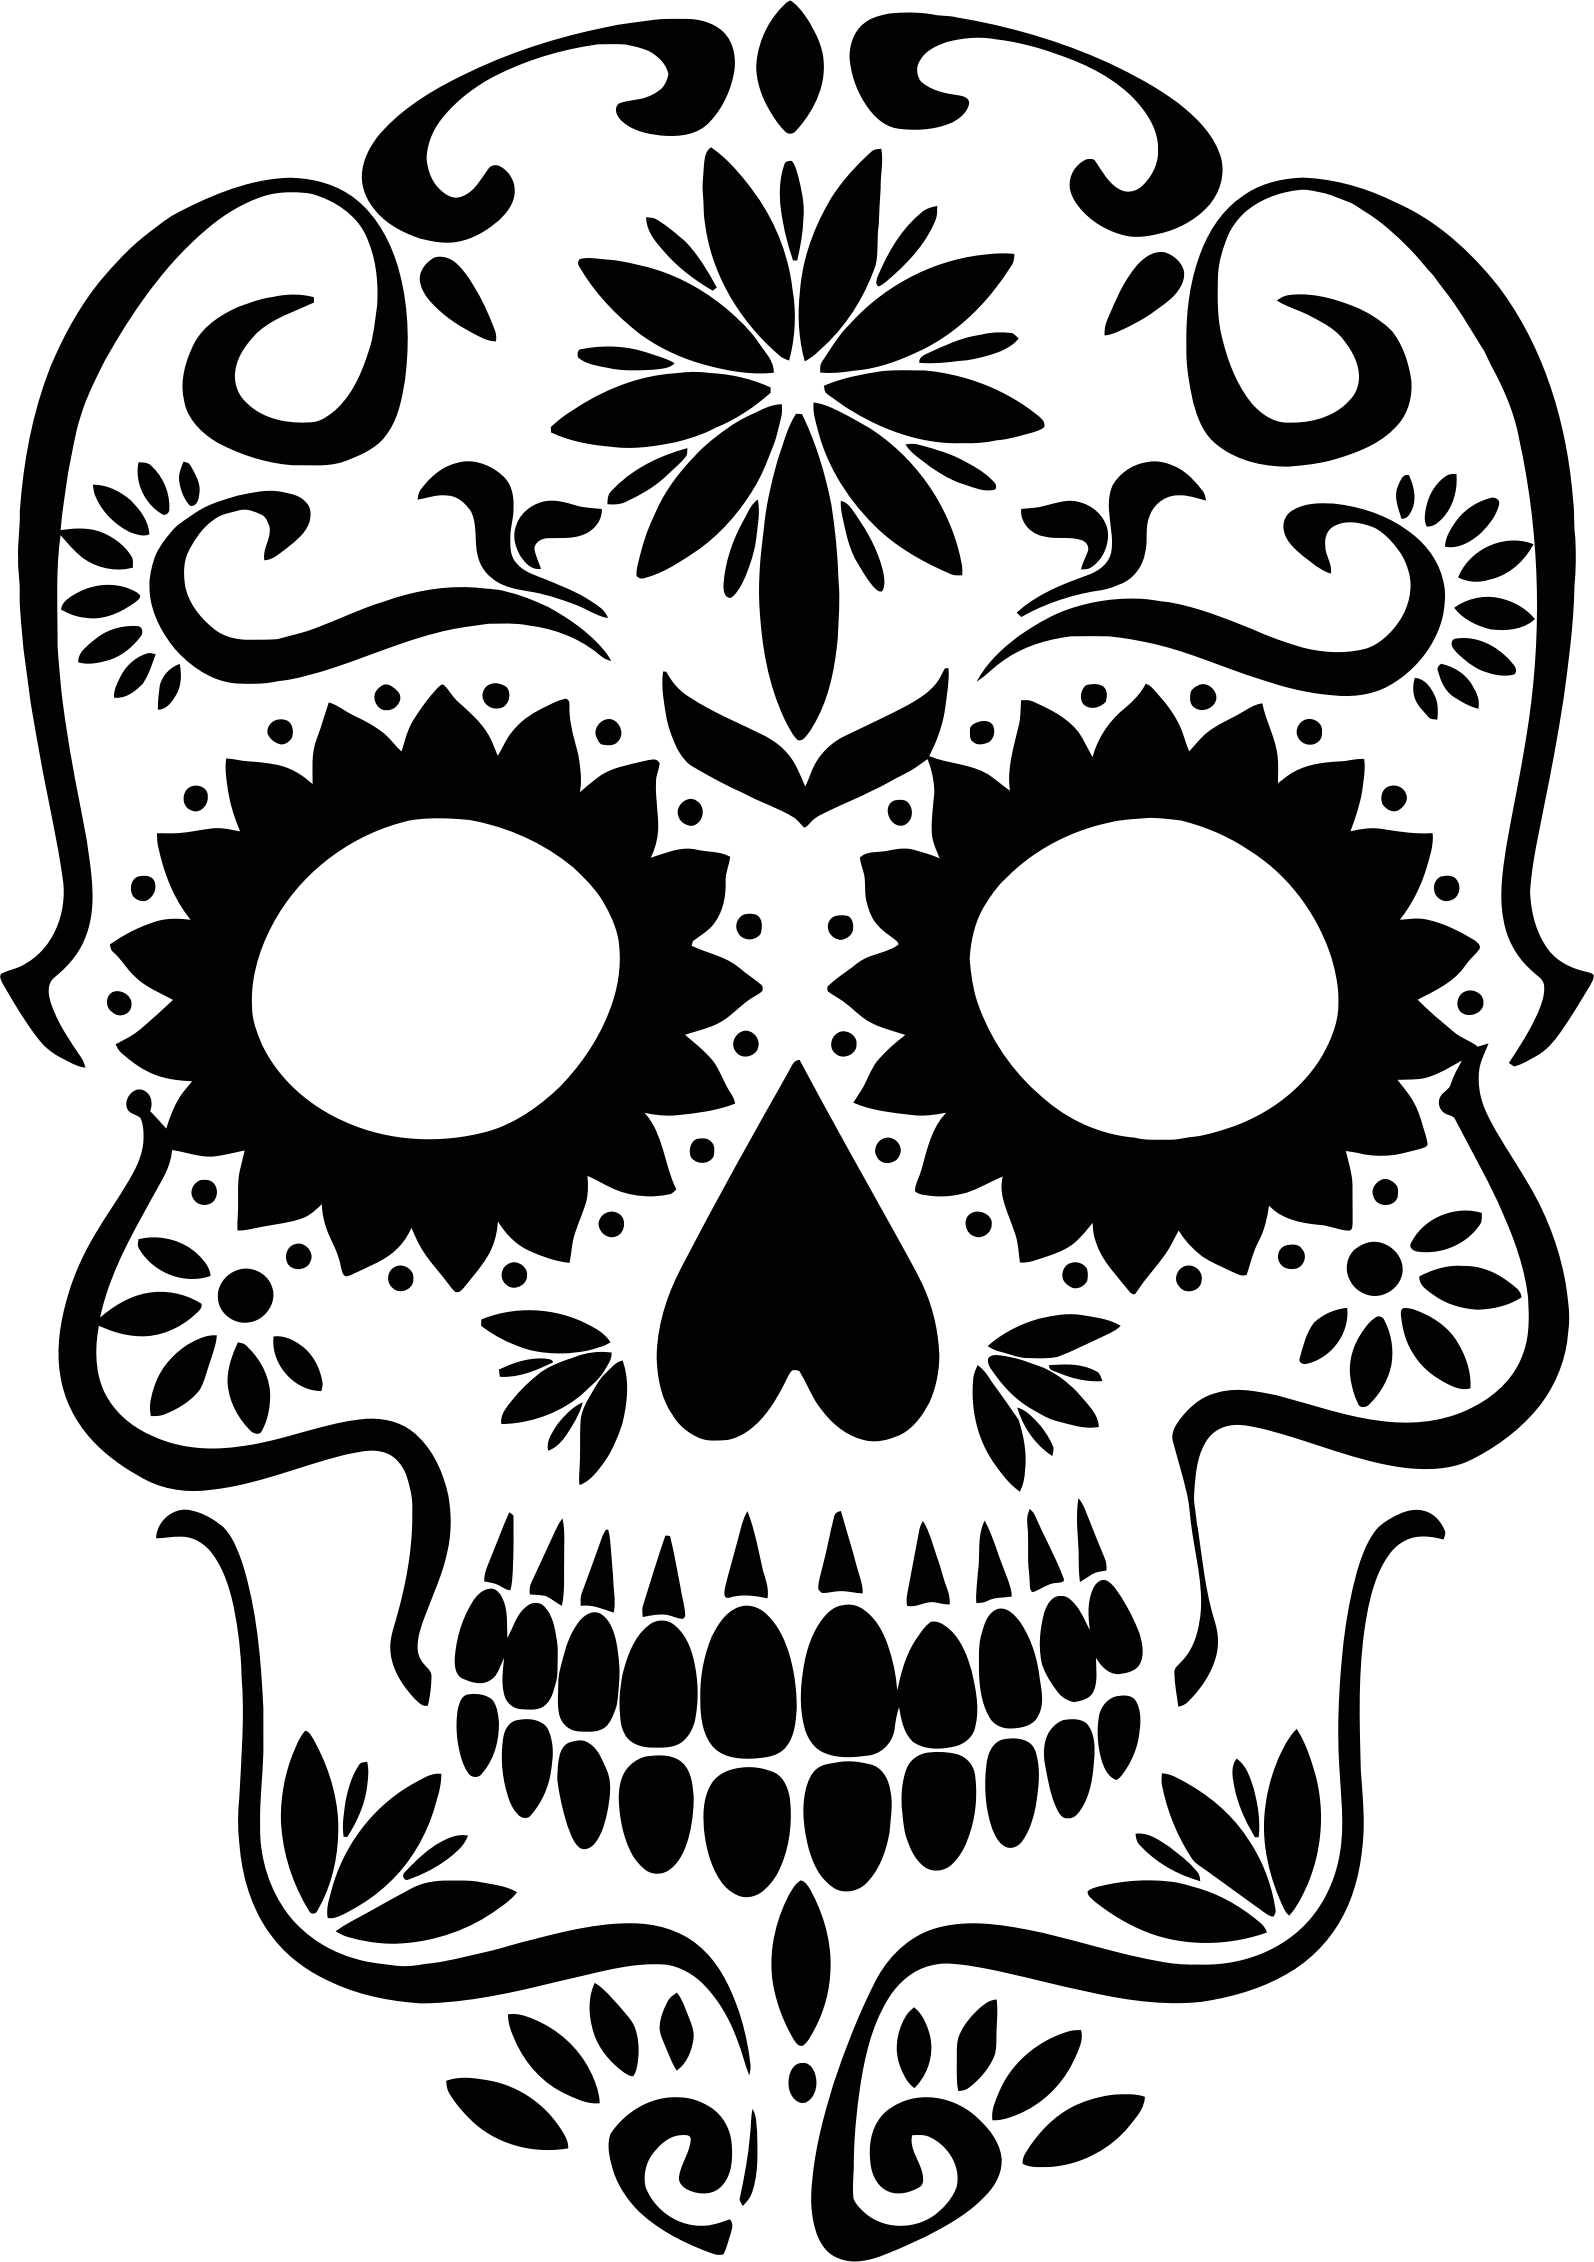 Download Clipart - Sugar Skull Silhouette